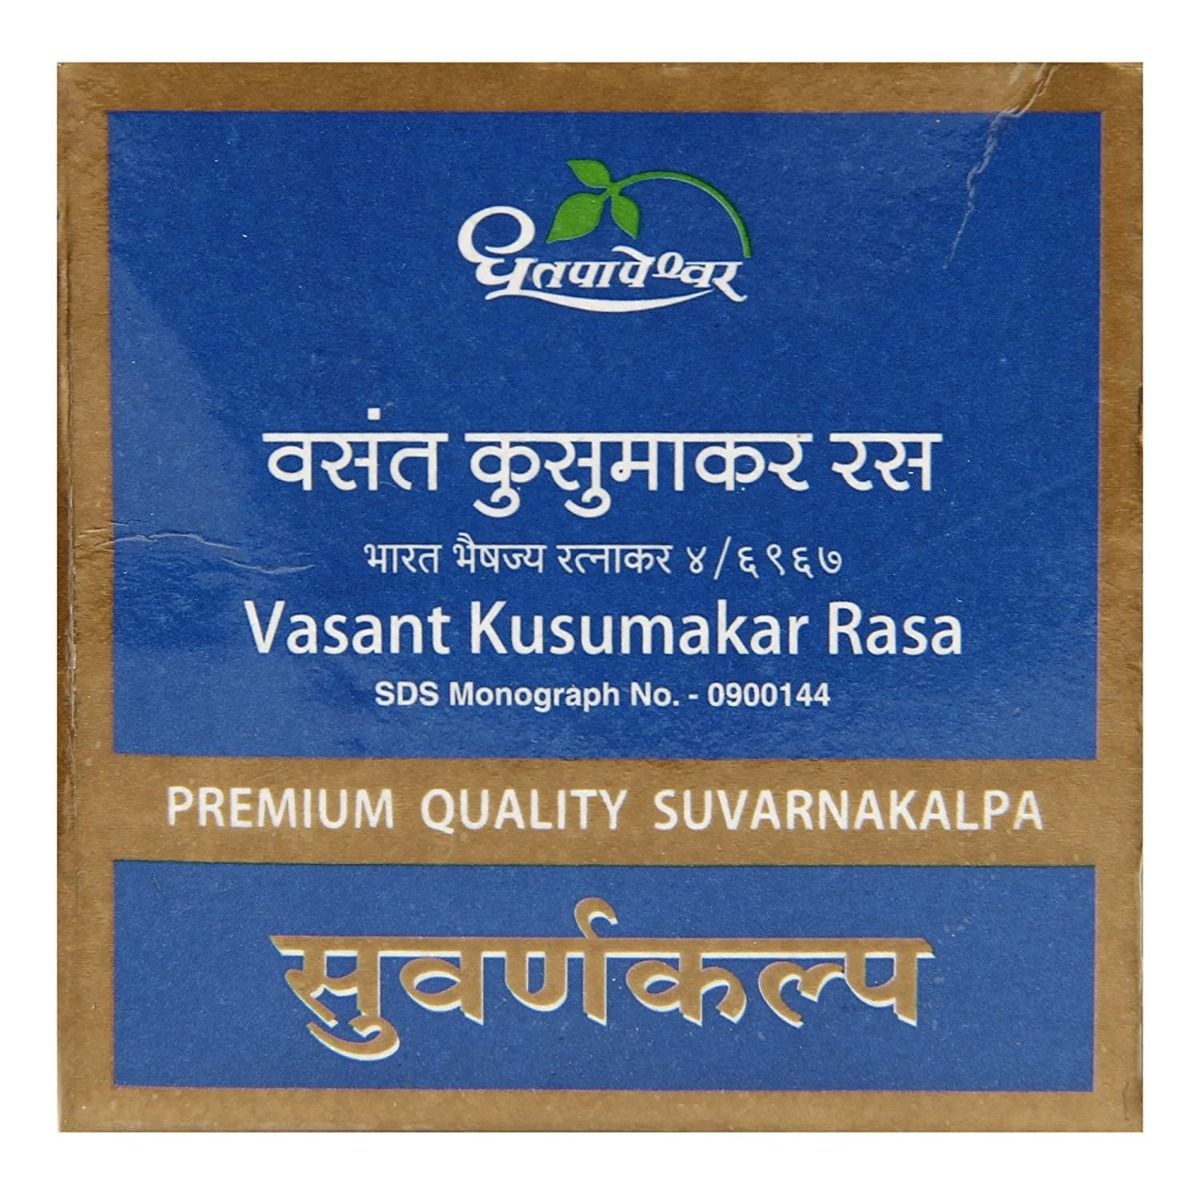 Dhootapapeshwar Premium Quality Vasant Kusumakar Rasa, 10 Tablets, Pack of 1 